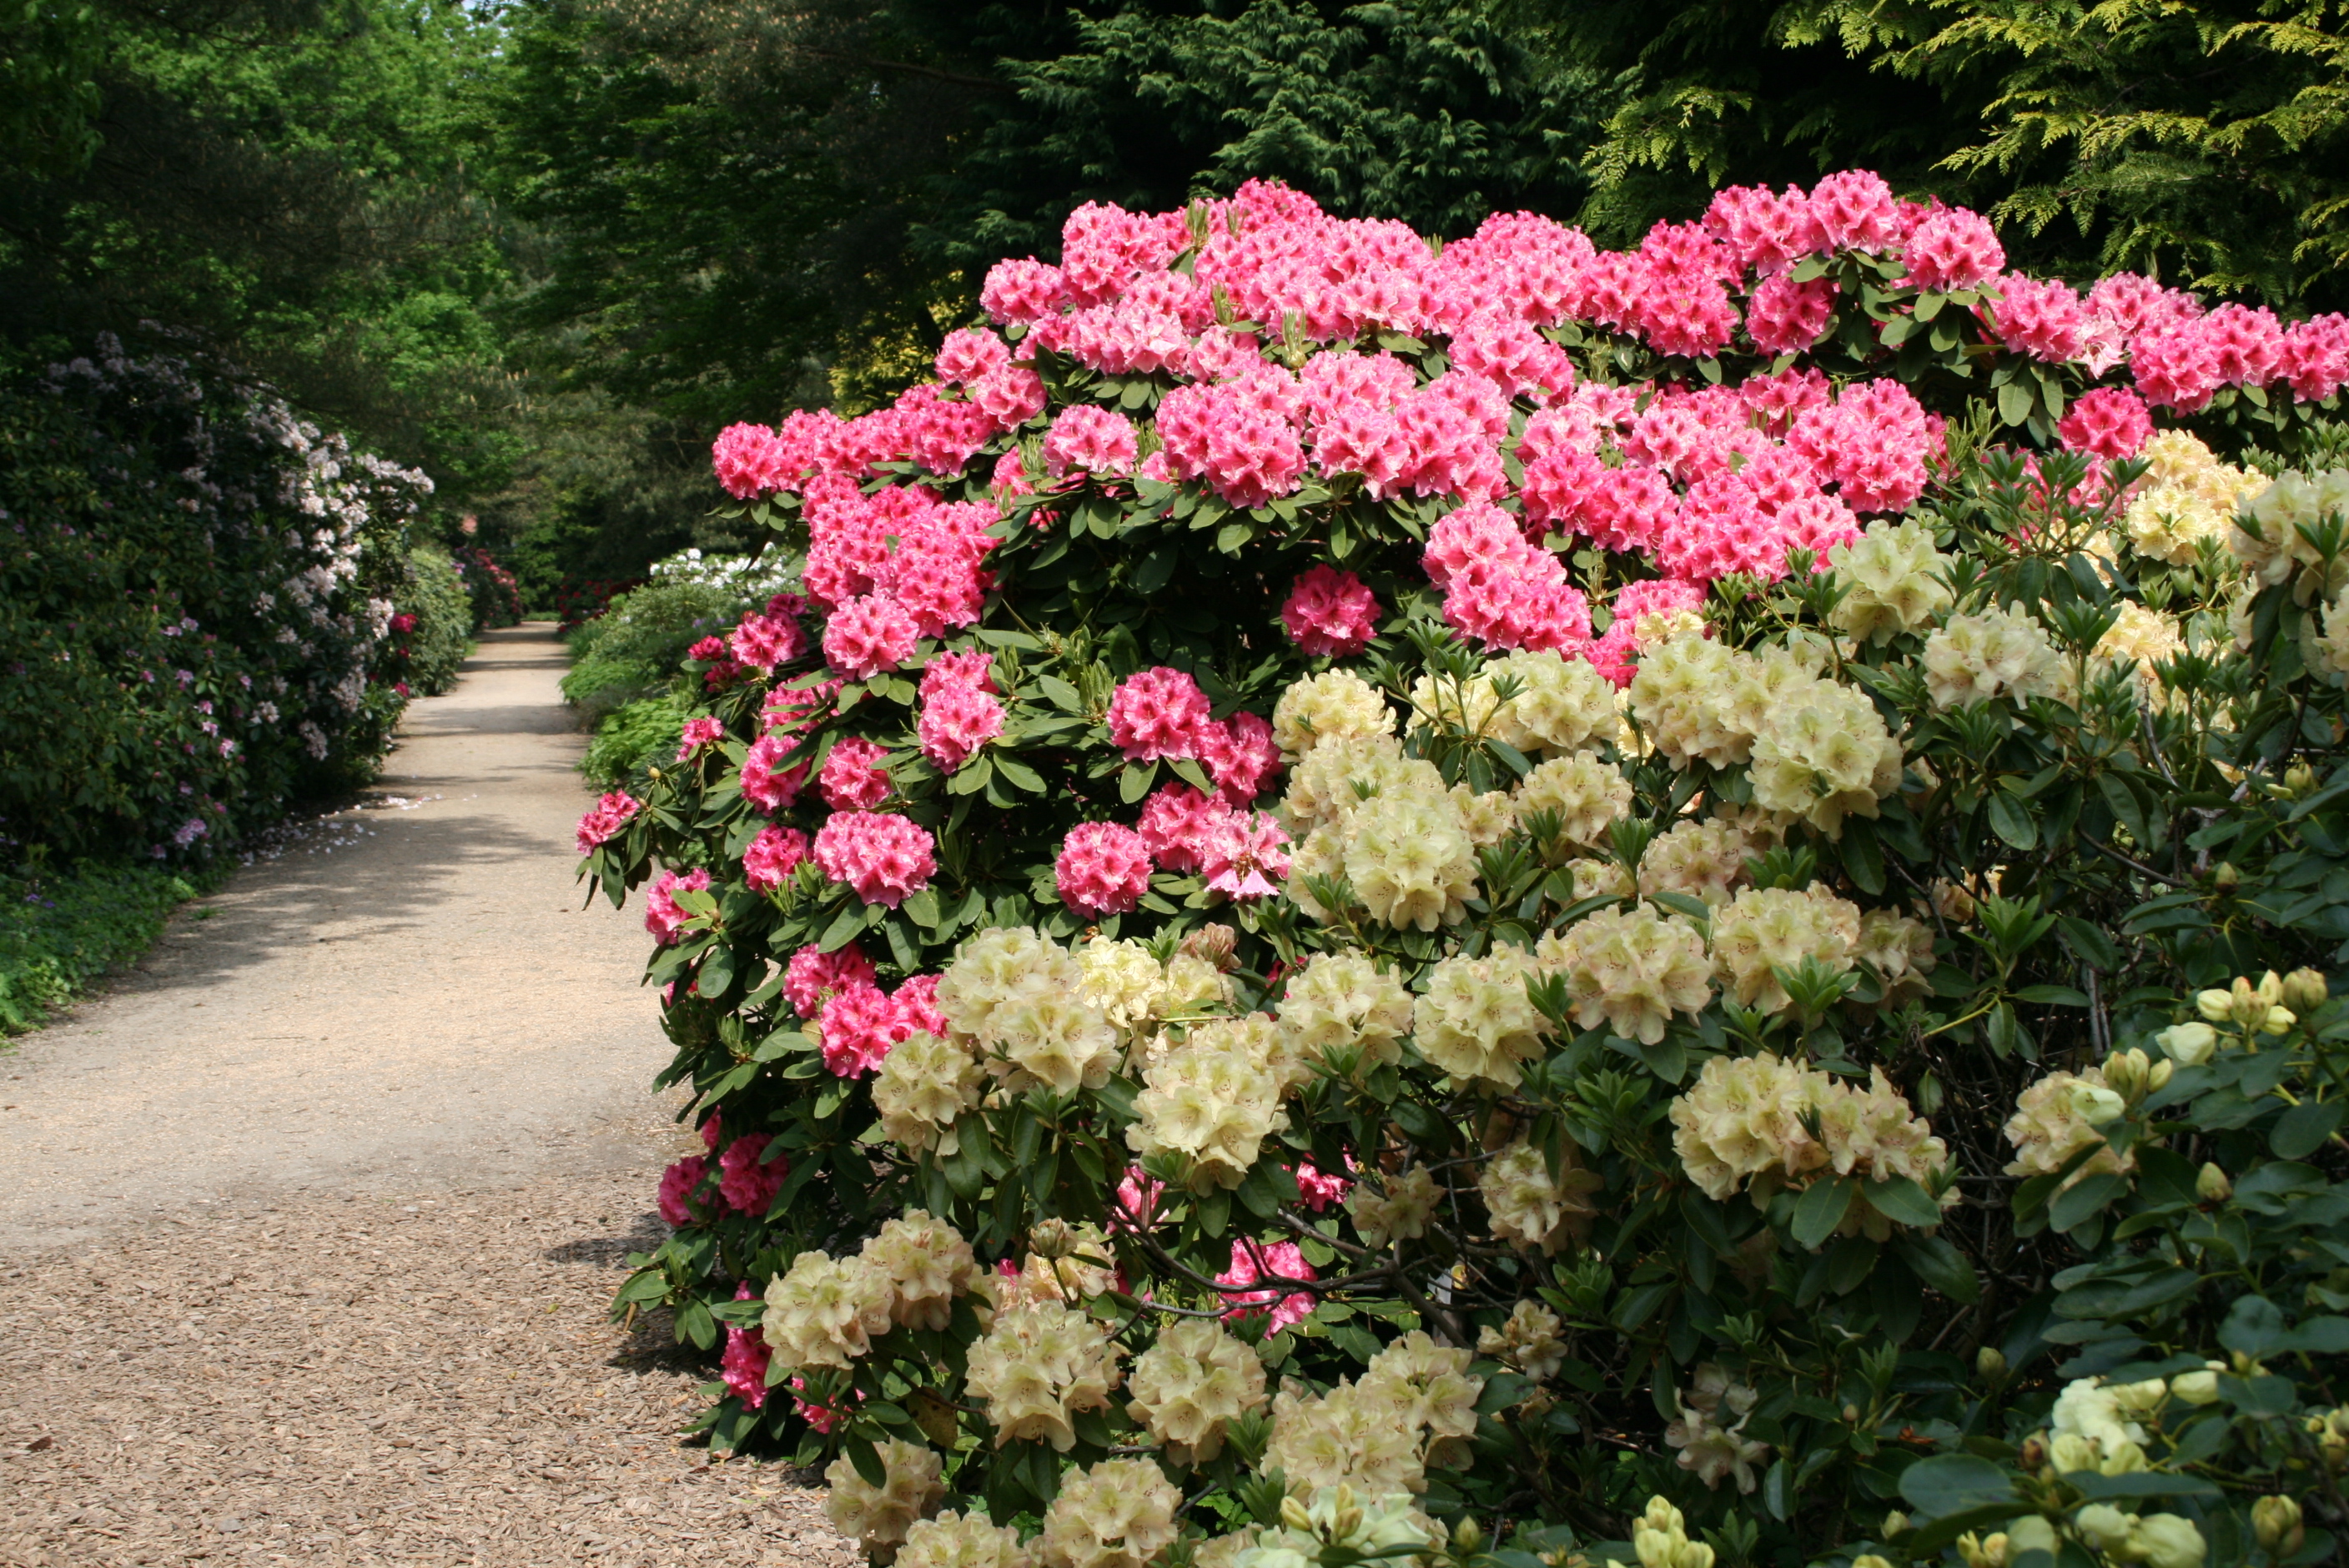 Freizeitgartenbau: Abendspaziergang im Mai - Rhododendron im Klimawandel